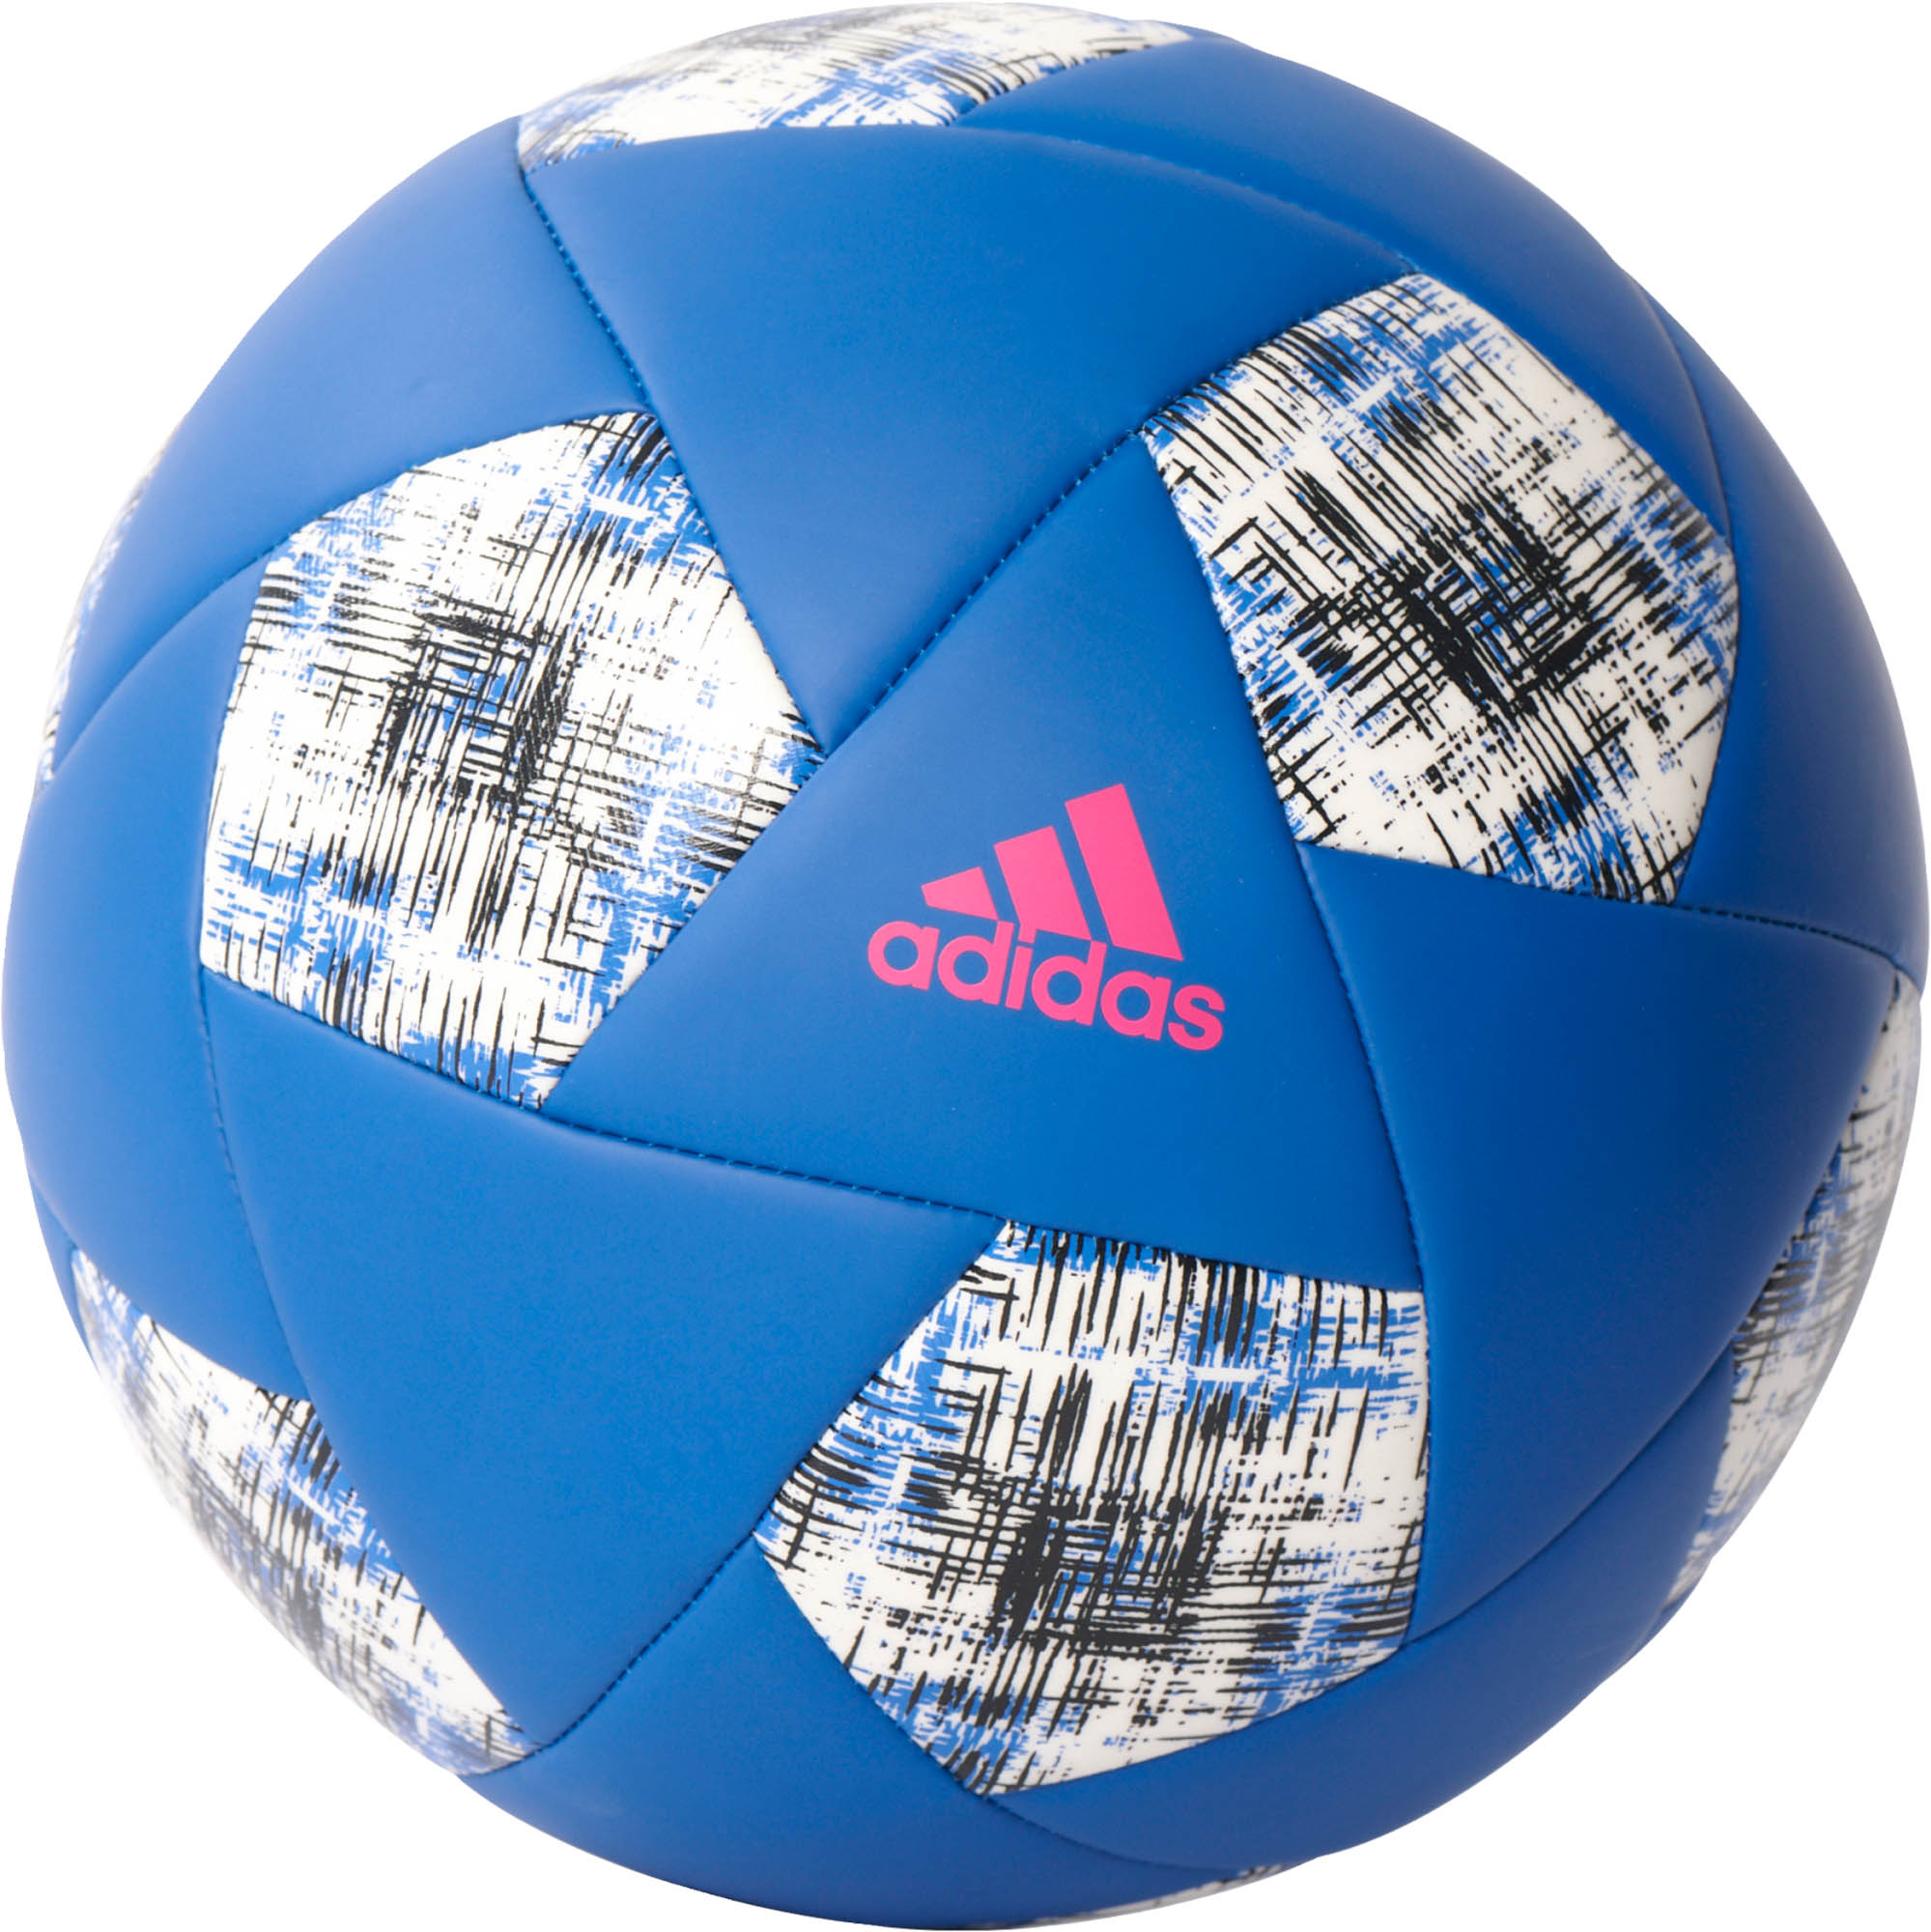 adidas X Glider Soccer Ball - adidas 